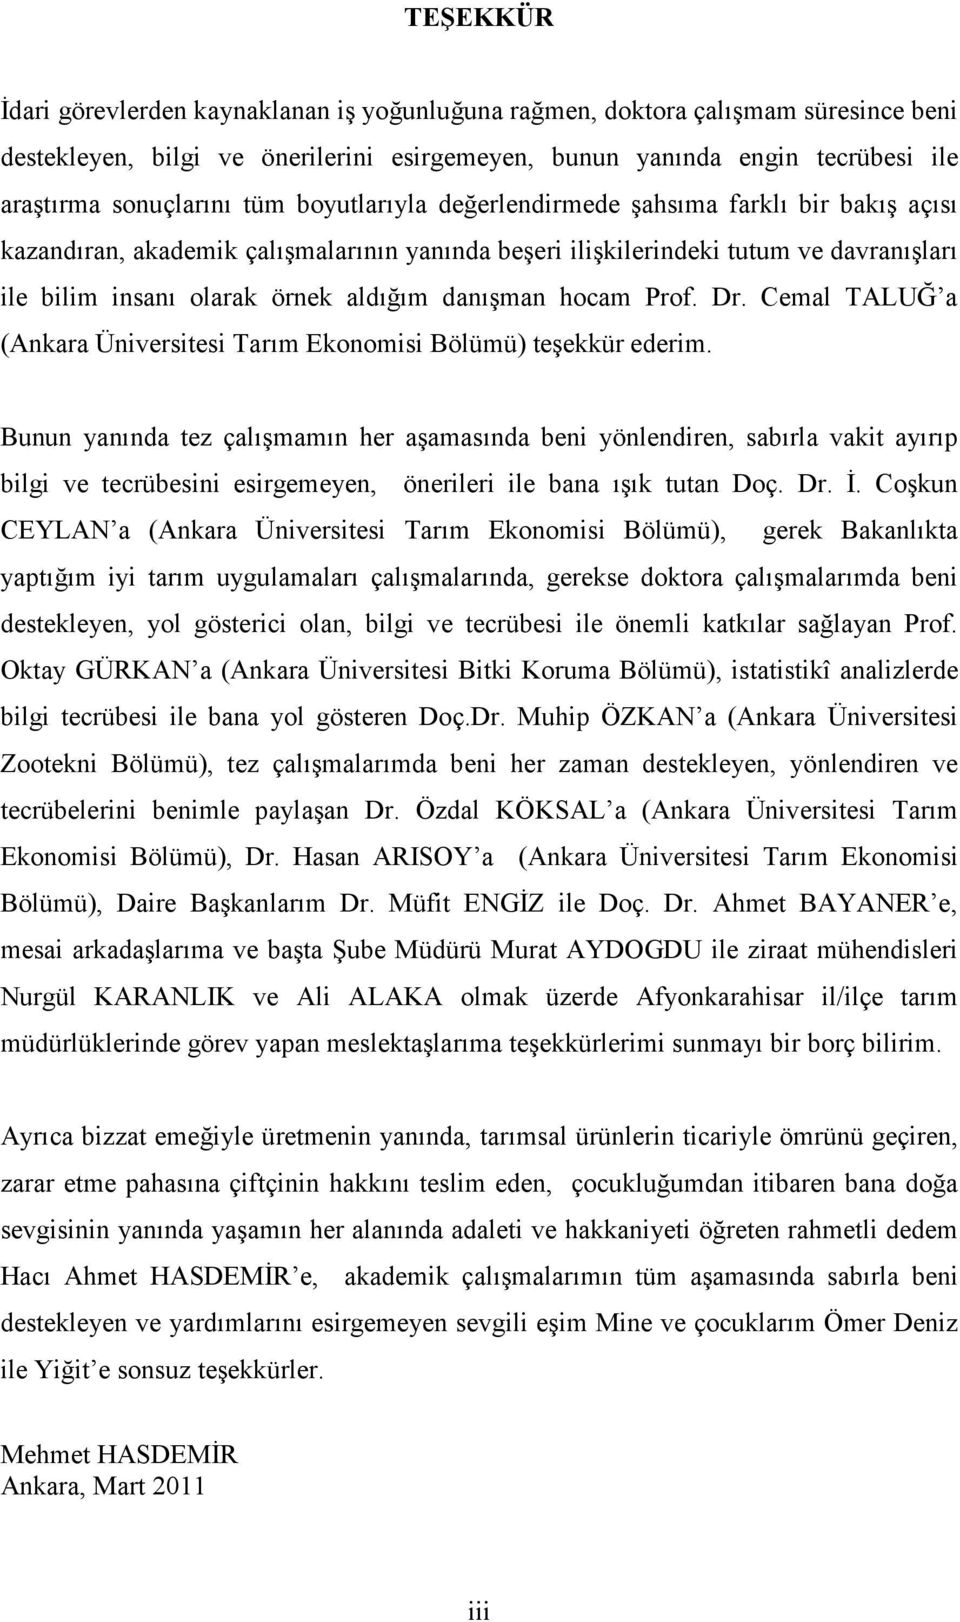 hocam Prof. Dr. Cemal TALUĞ a (Ankara Üniversitesi Tarım Ekonomisi Bölümü) teşekkür ederim.